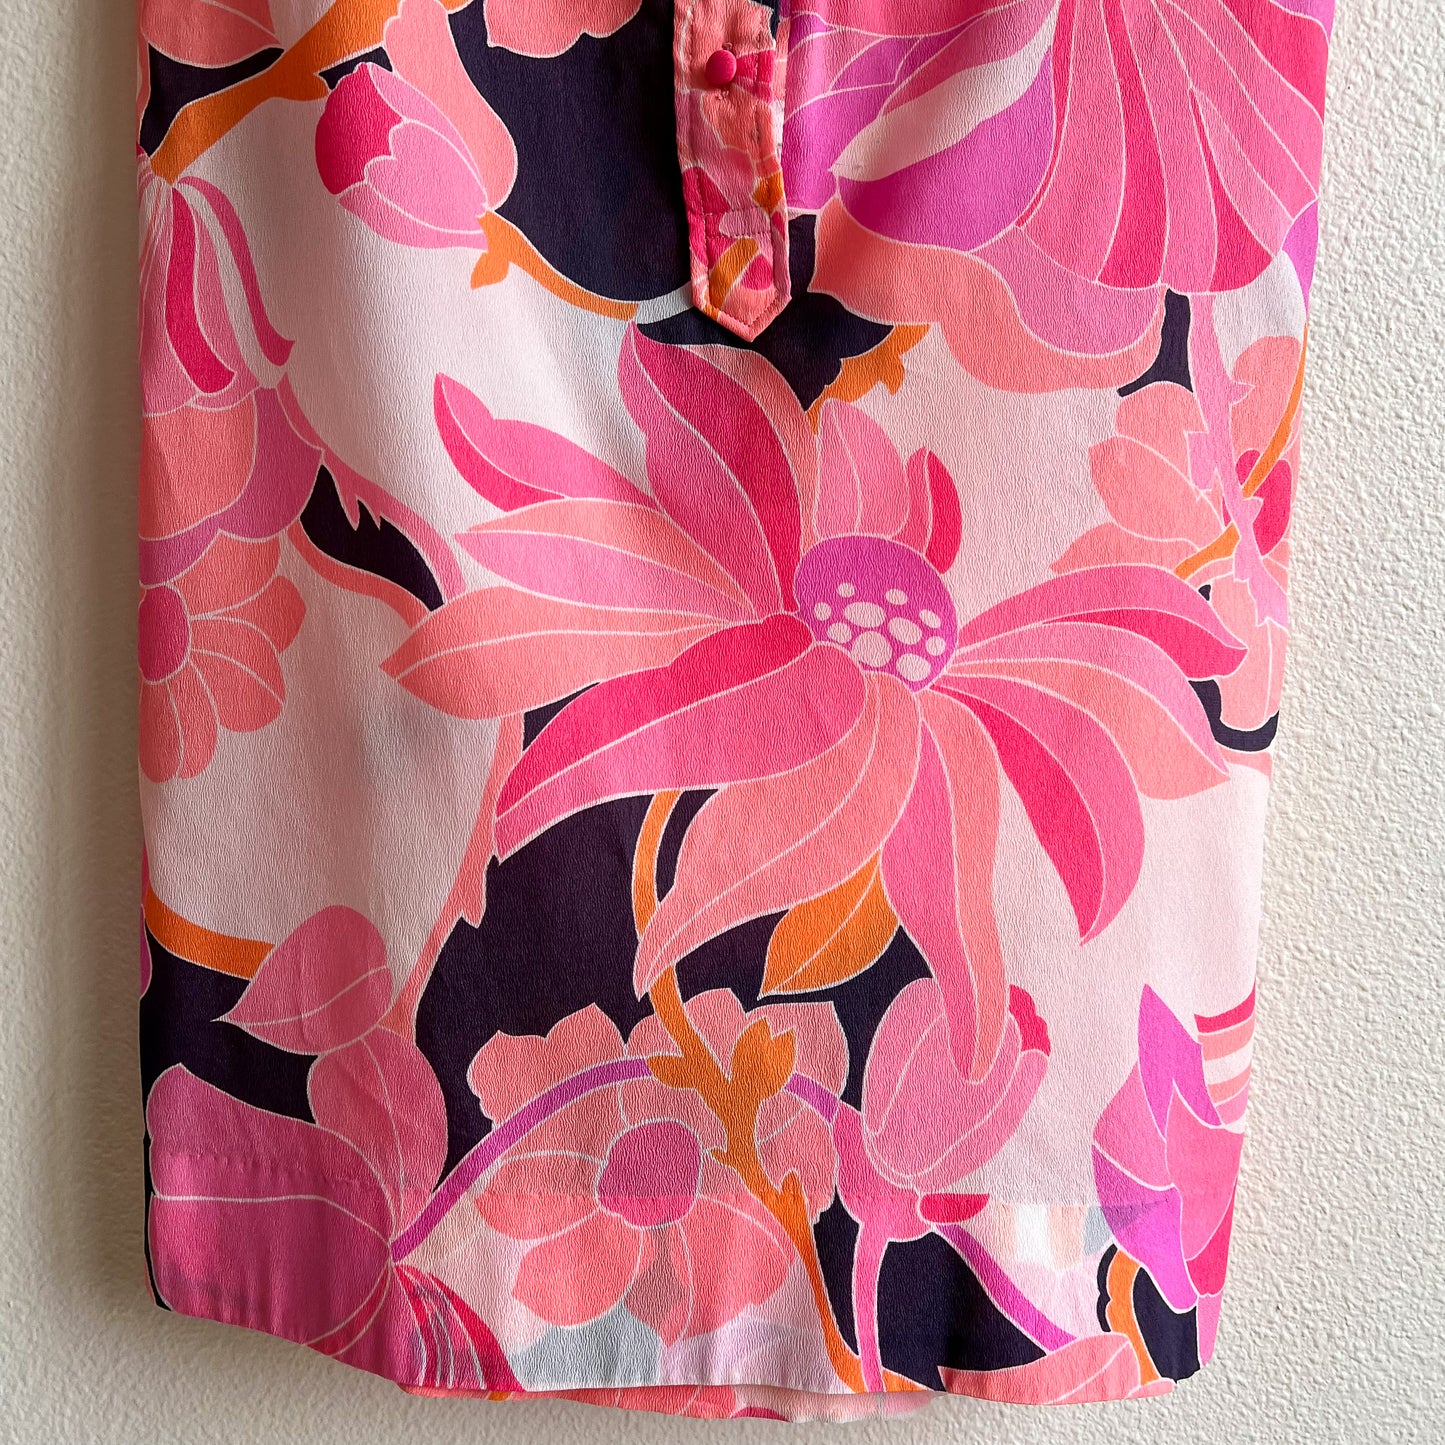 1970s Pink Floral Novelty Print Belted Dress (M/L)